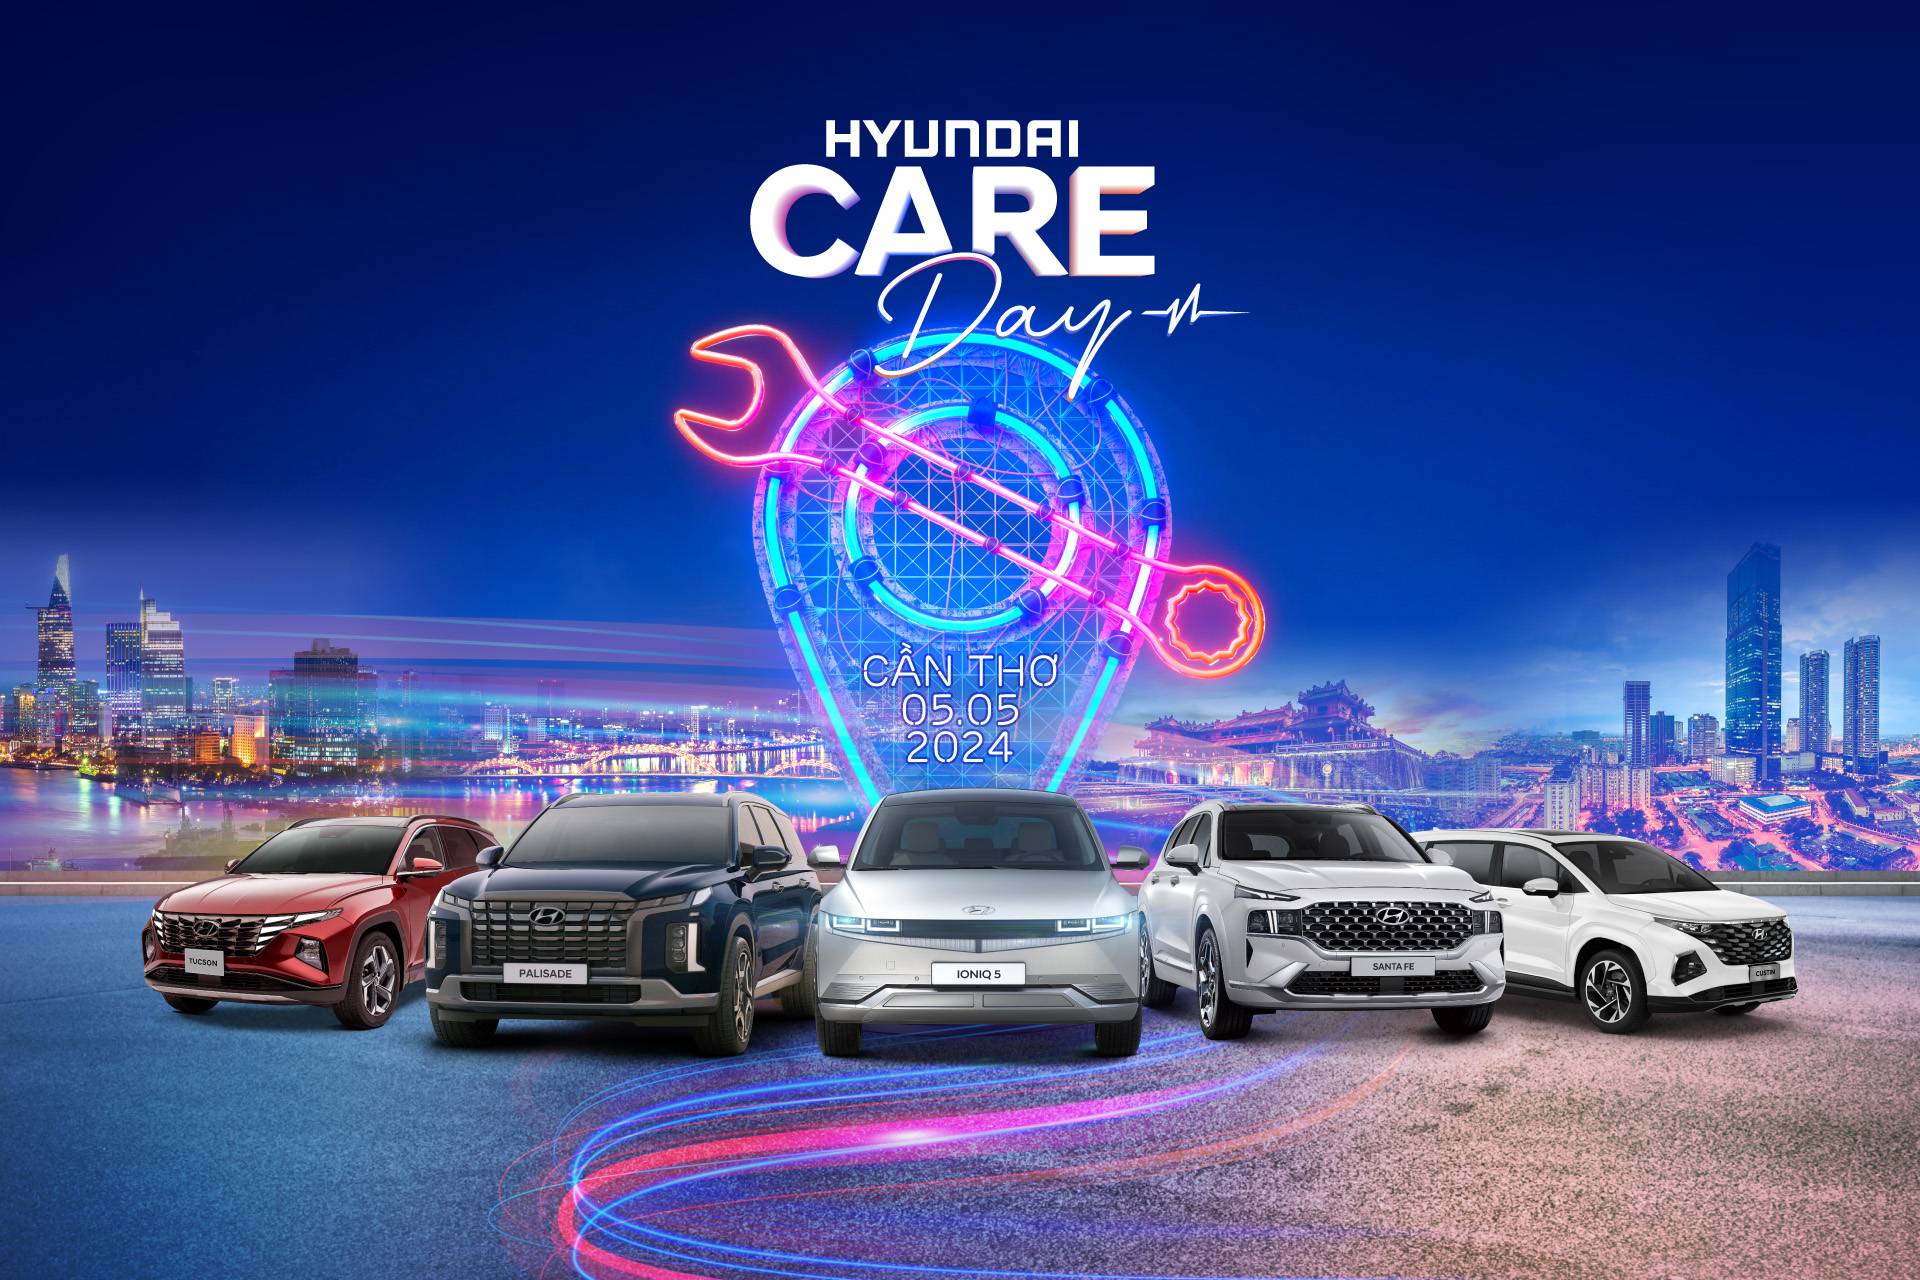 Ngày hội chăm sóc xe Hyundai lần đầu diễn ra tại Việt Nam